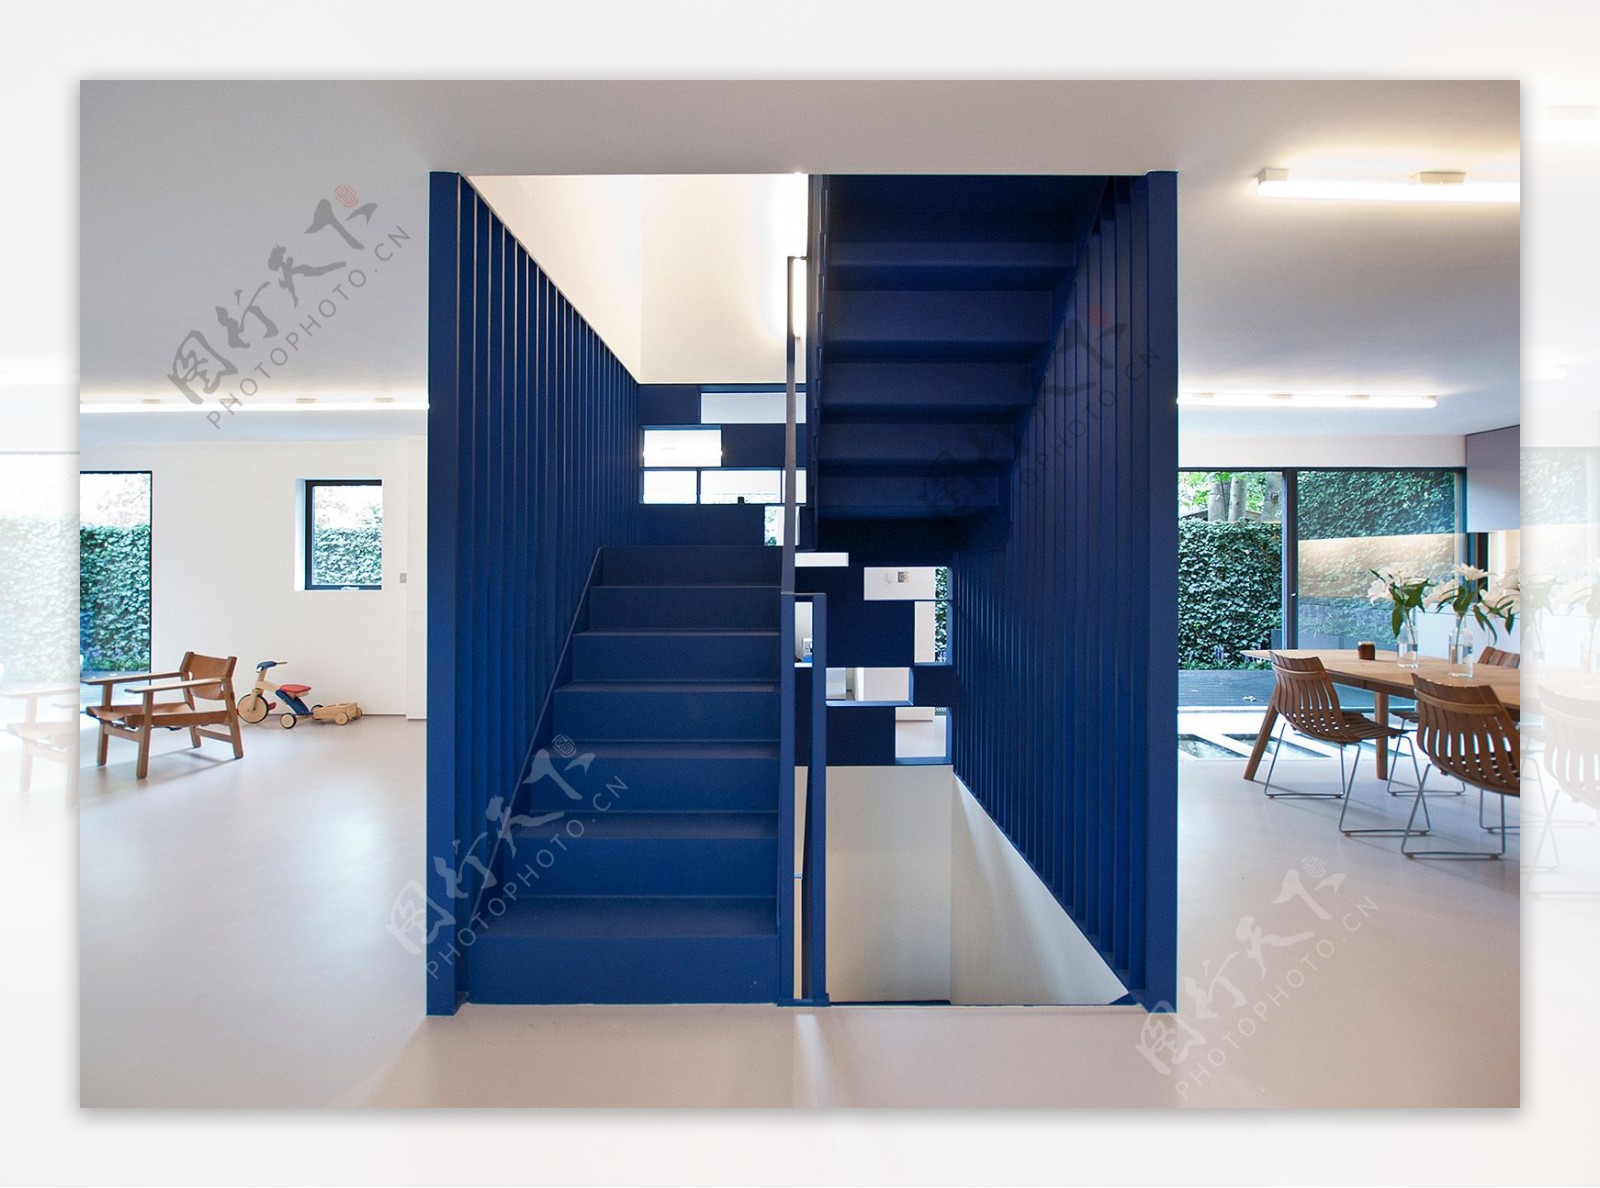 现代时尚客厅蓝色楼梯室内装修效果图